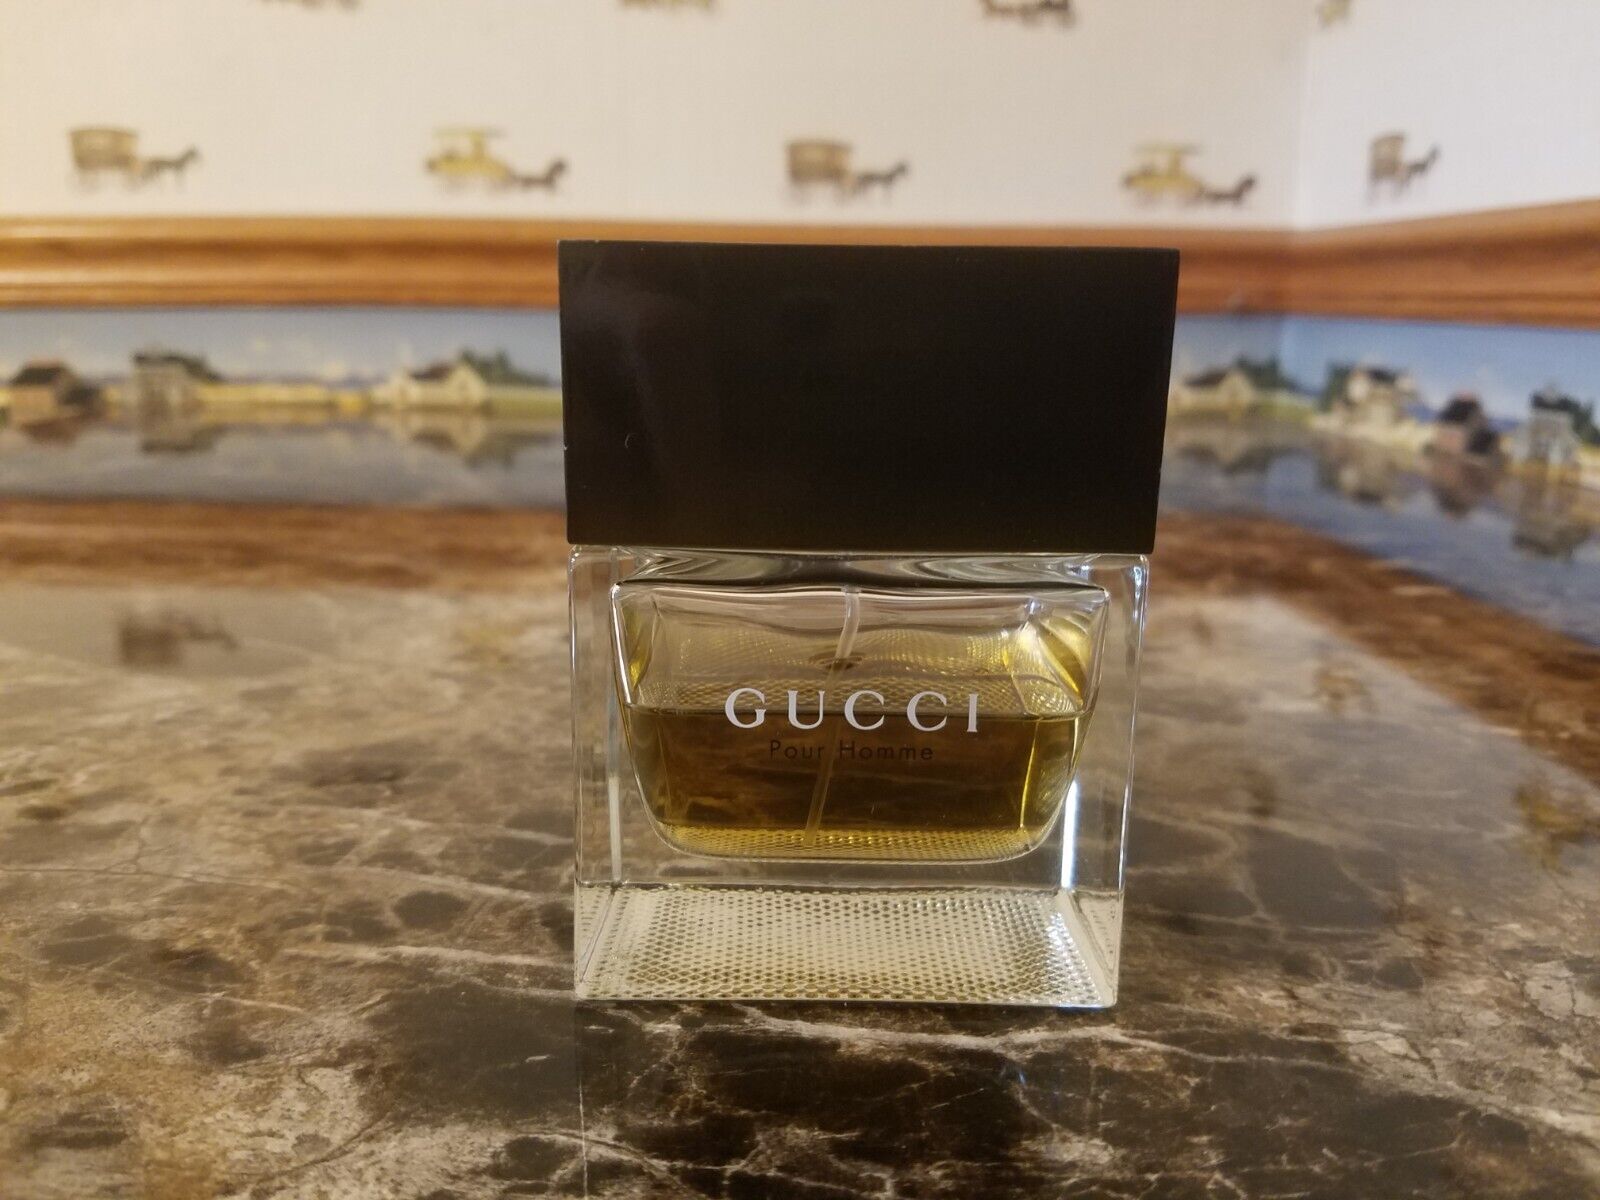 Gucci Pour Homme I - 3.4 oz / 100ml - Vintage By Gucci, SEE PICS / DESCRIPTION